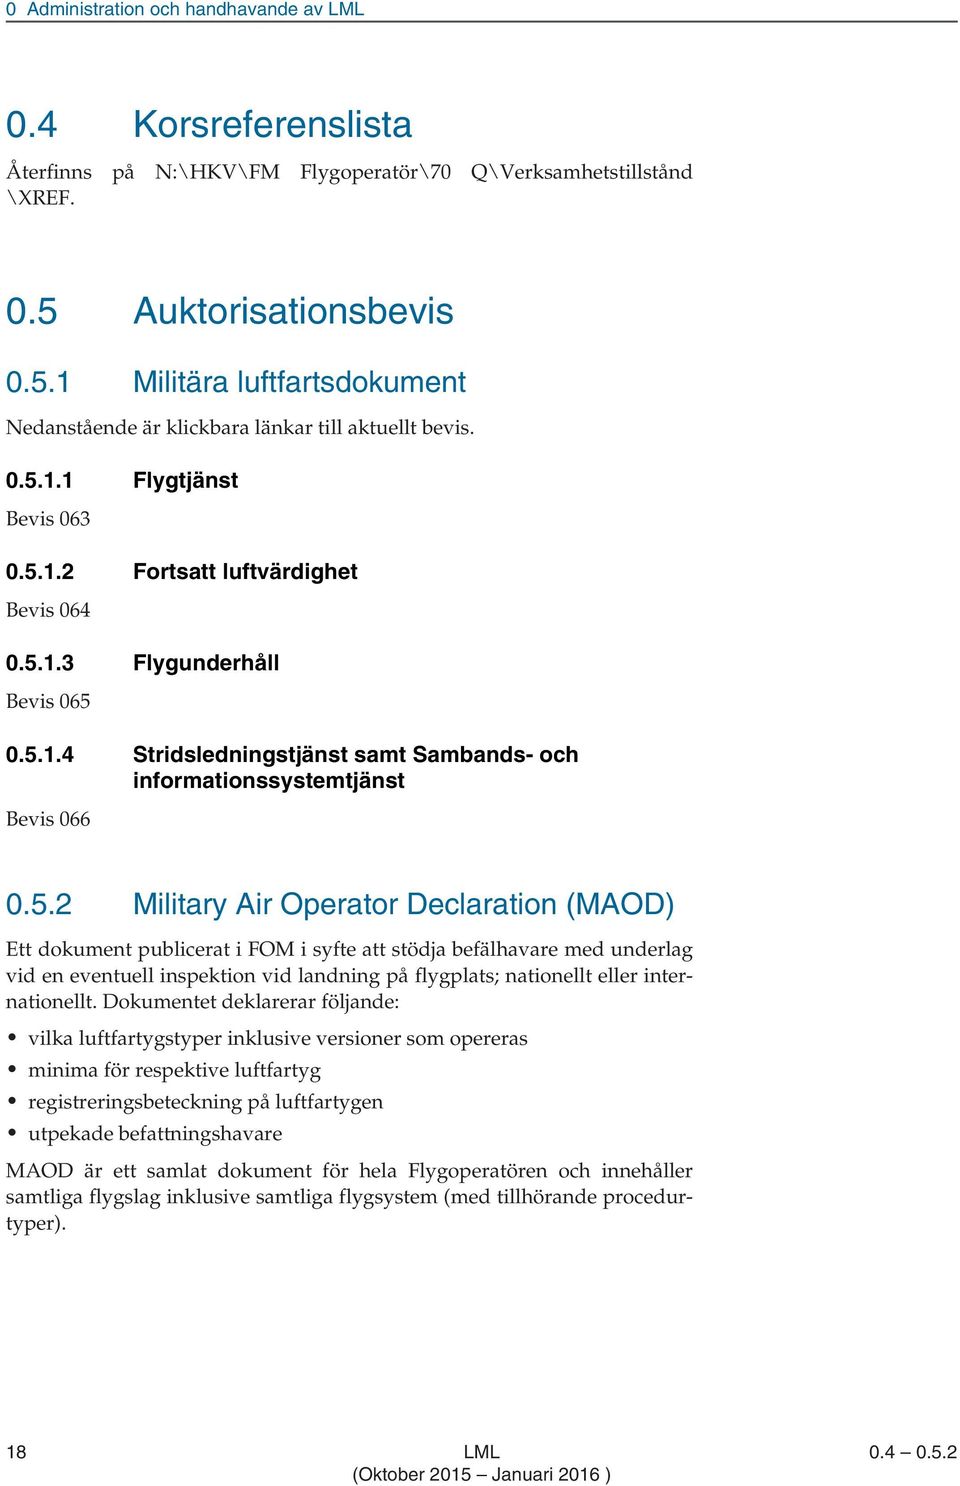 5.1.4 Stridsledningstjänst samt Sambands- och informationssystemtjänst Bevis 066 0.5.2 Military Air Operator Declaration (MAOD) Ett dokument publicerat i FOM i syfte att stödja befälhavare med